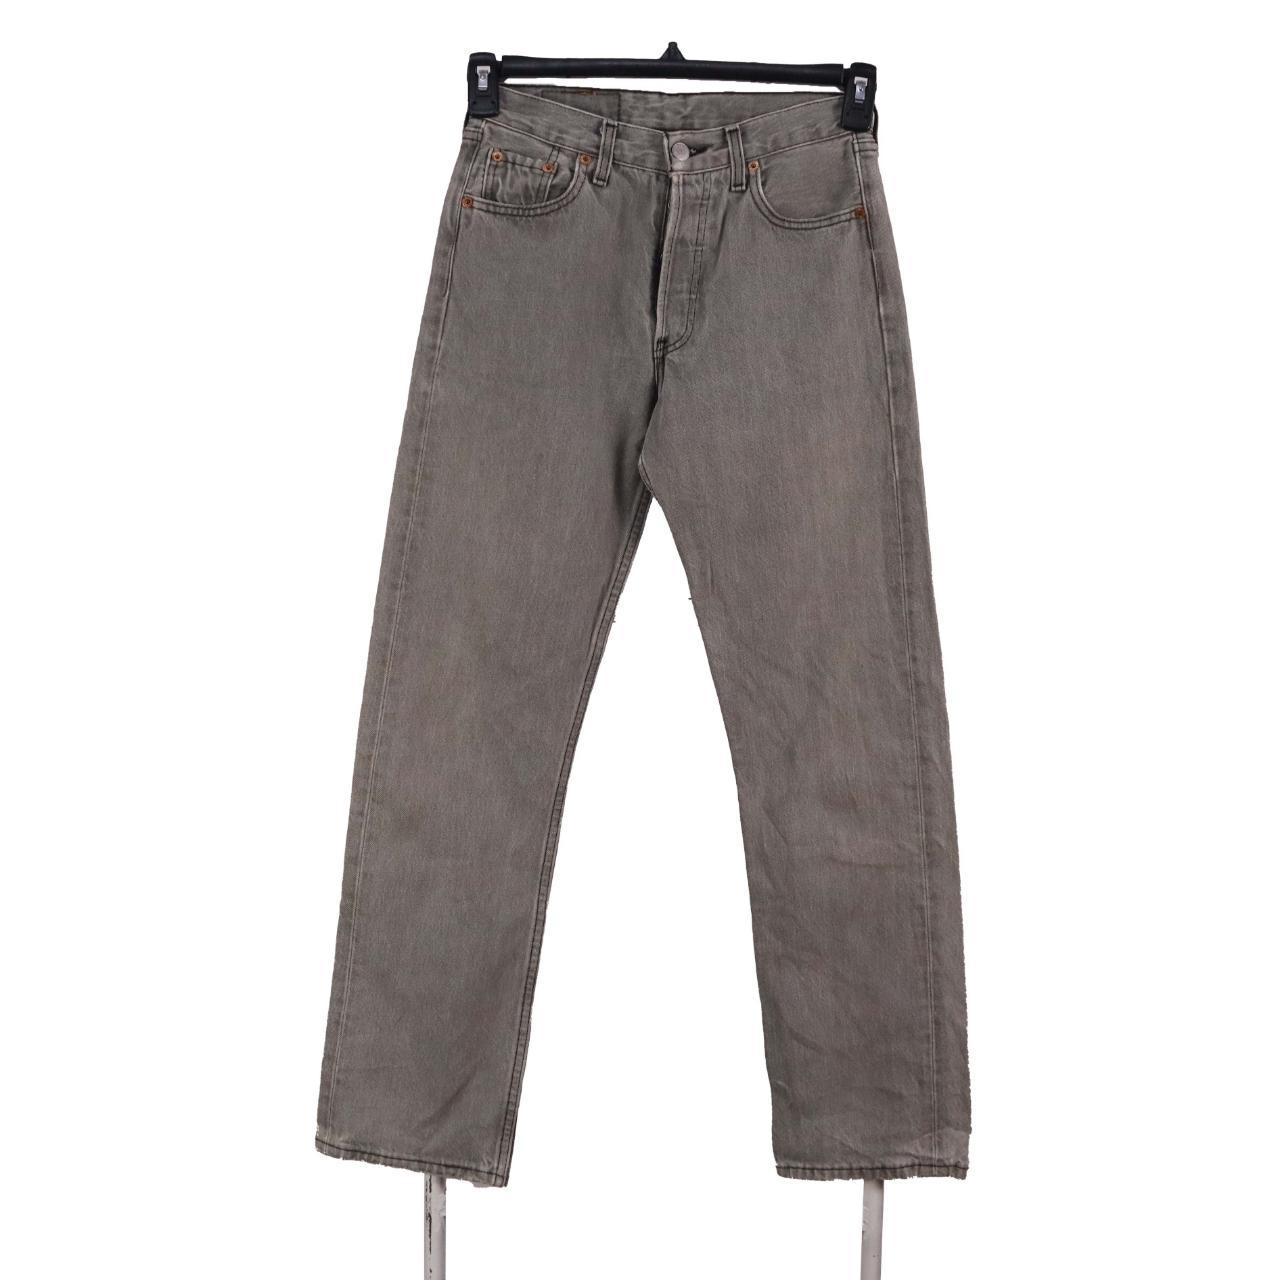 Vintage Levi's Jeans / Pants Levi's 90's Jeans /... - Depop